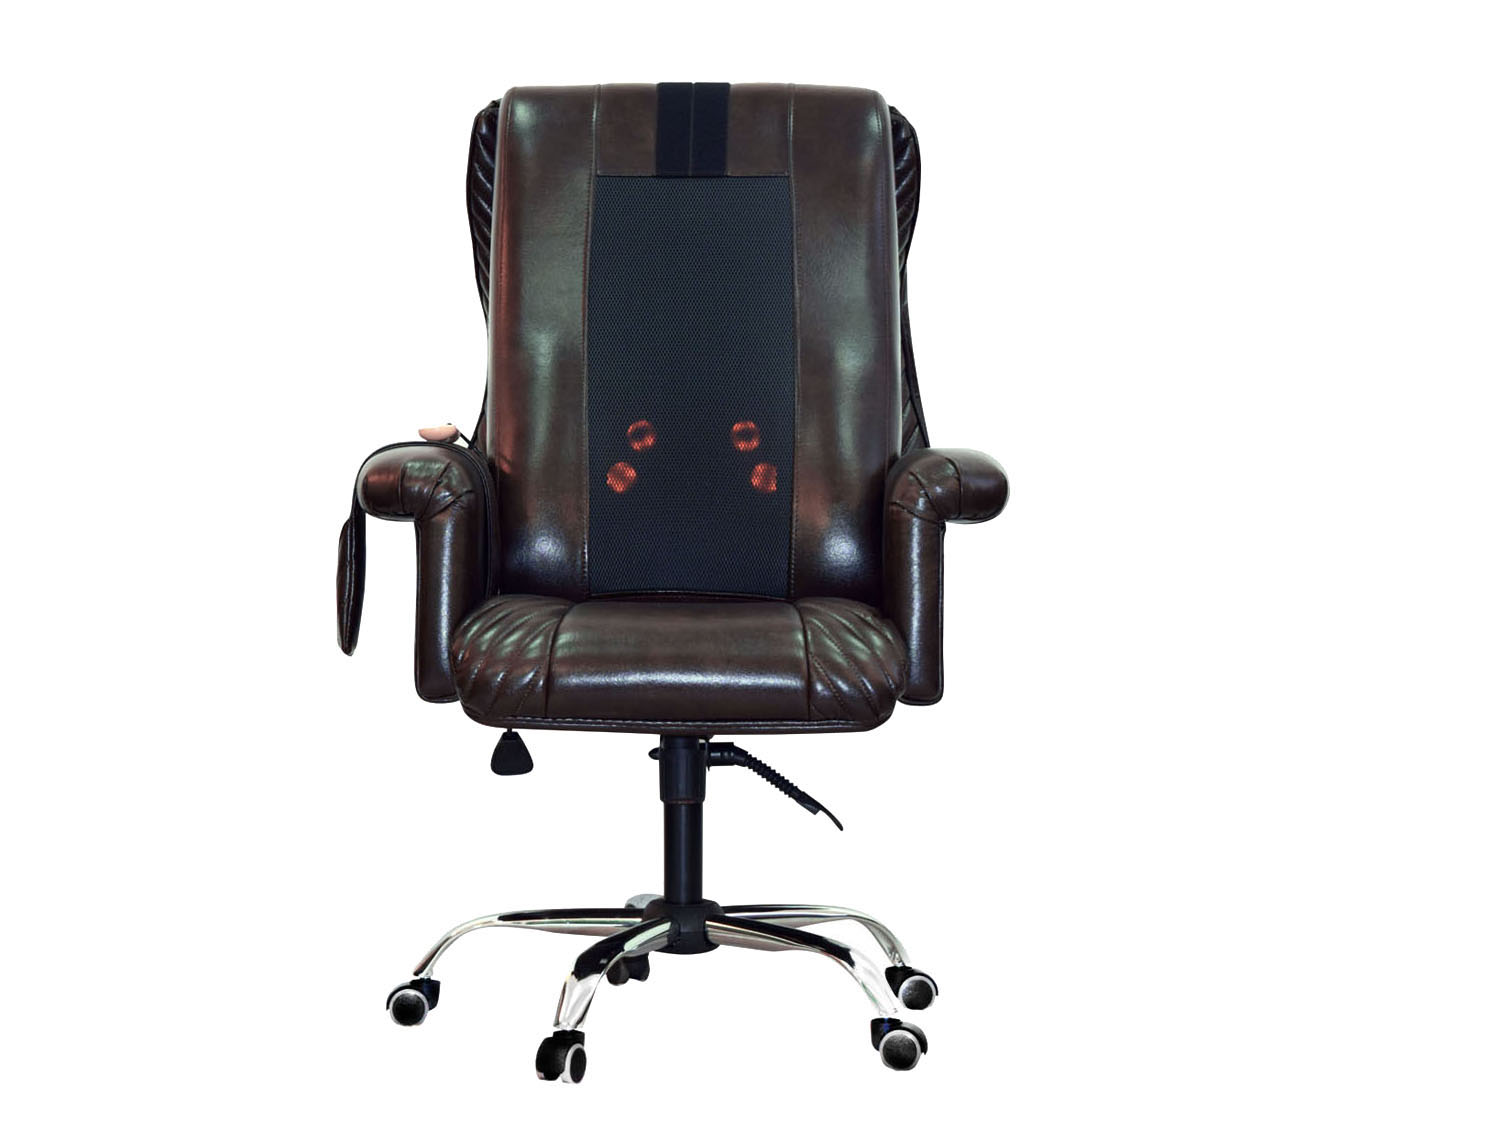 Офисное массажное кресло EGO President EG1005 шоколадный